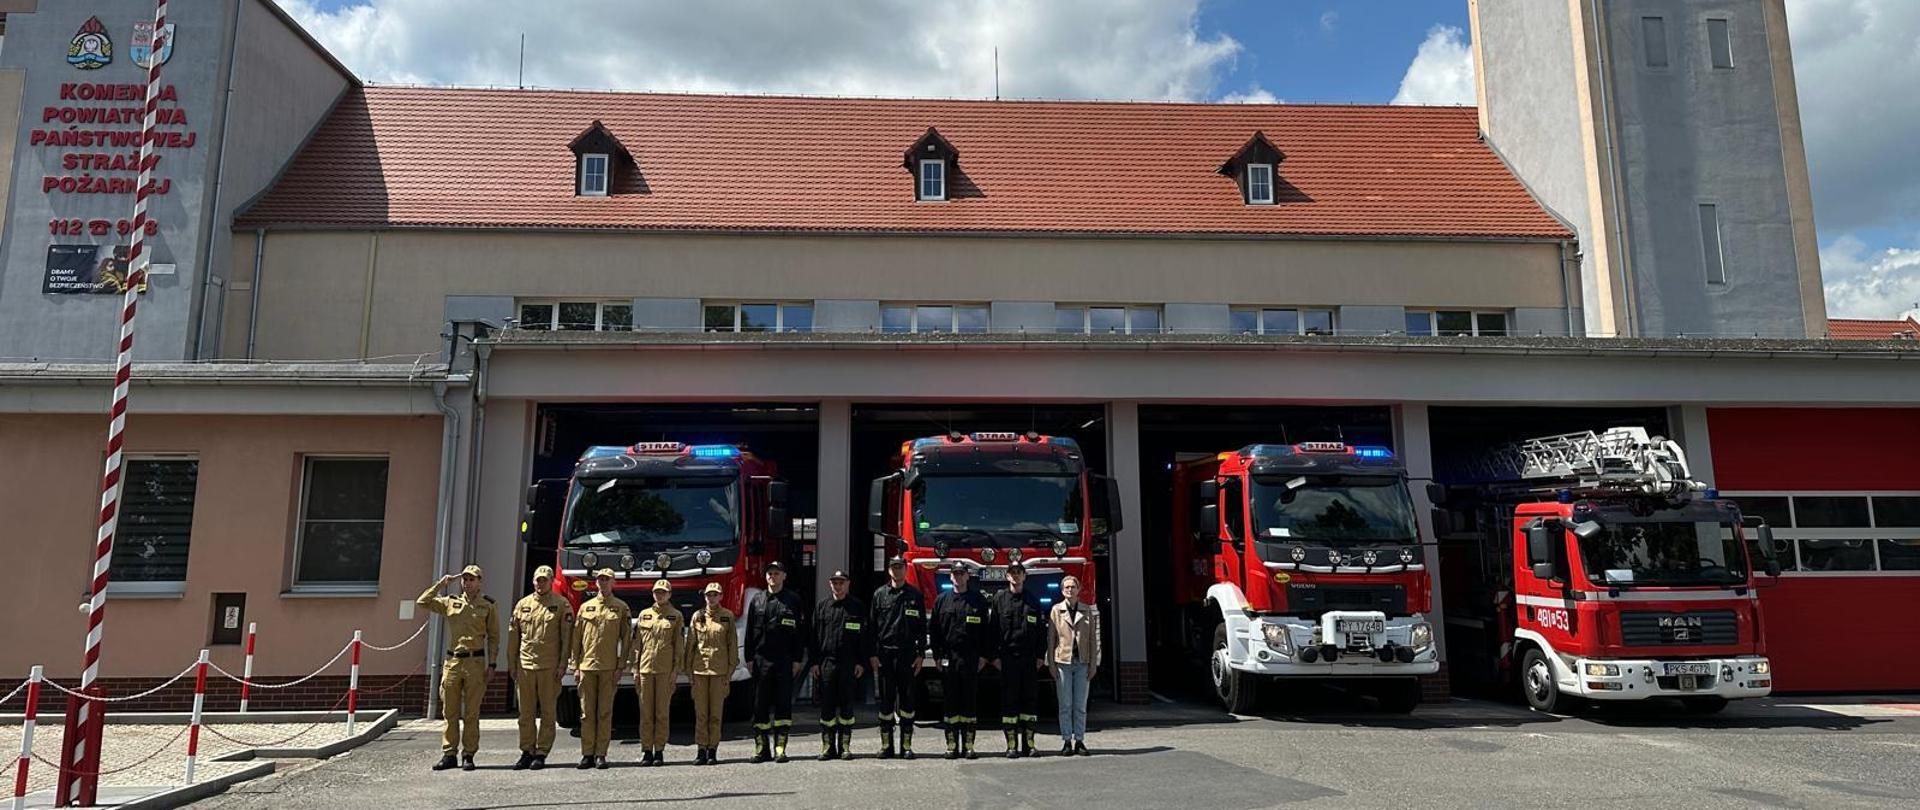 Strażacy oddali hołd tragicznie zmarłemu żołnierzowi. Na zdjęciu widać strażaków przed budynkiem Komendy, samochody strażackie wyjechały z garażu, mają włączone sygnały świetlne i dźwiękowe, widać maszt z flagą Polski i budynek Komendy Powiatowej PSP w Kościanie.